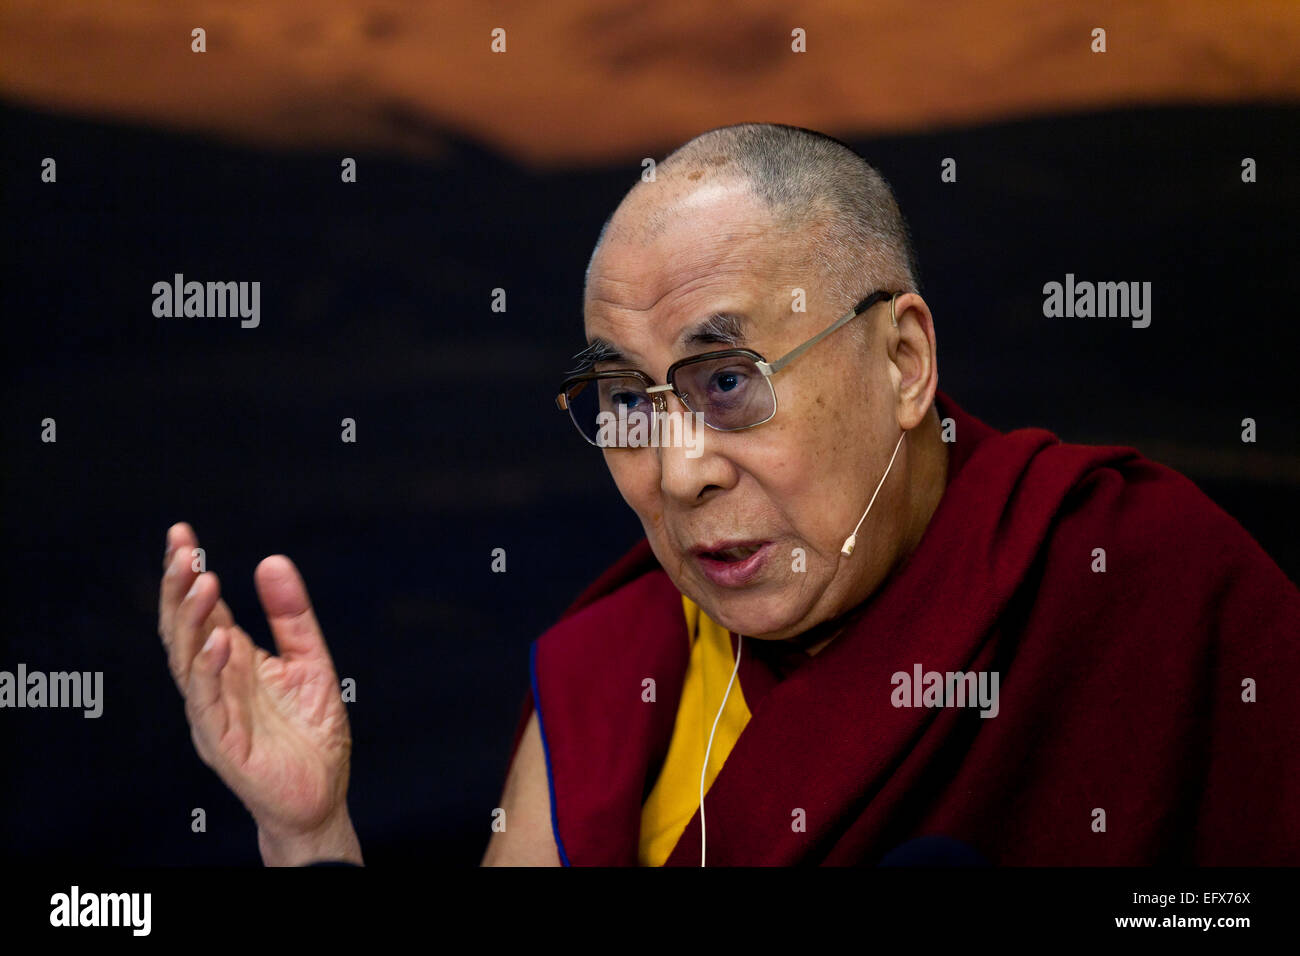 Kopenhagen, Dänemark. 11. Februar 2015. Dalai Lama - das geistliche Oberhaupt des tibetischen Volkes und für tibetische Buddhisten auf der ganzen Welt – zahlt einen zweitägigen Besuch in Dänemark. Hier im Bild bei seiner Pressekonferenz mit dänischen und internationalen Medien. Bildnachweis: OJPHOTOS/Alamy Live-Nachrichten Stockfoto